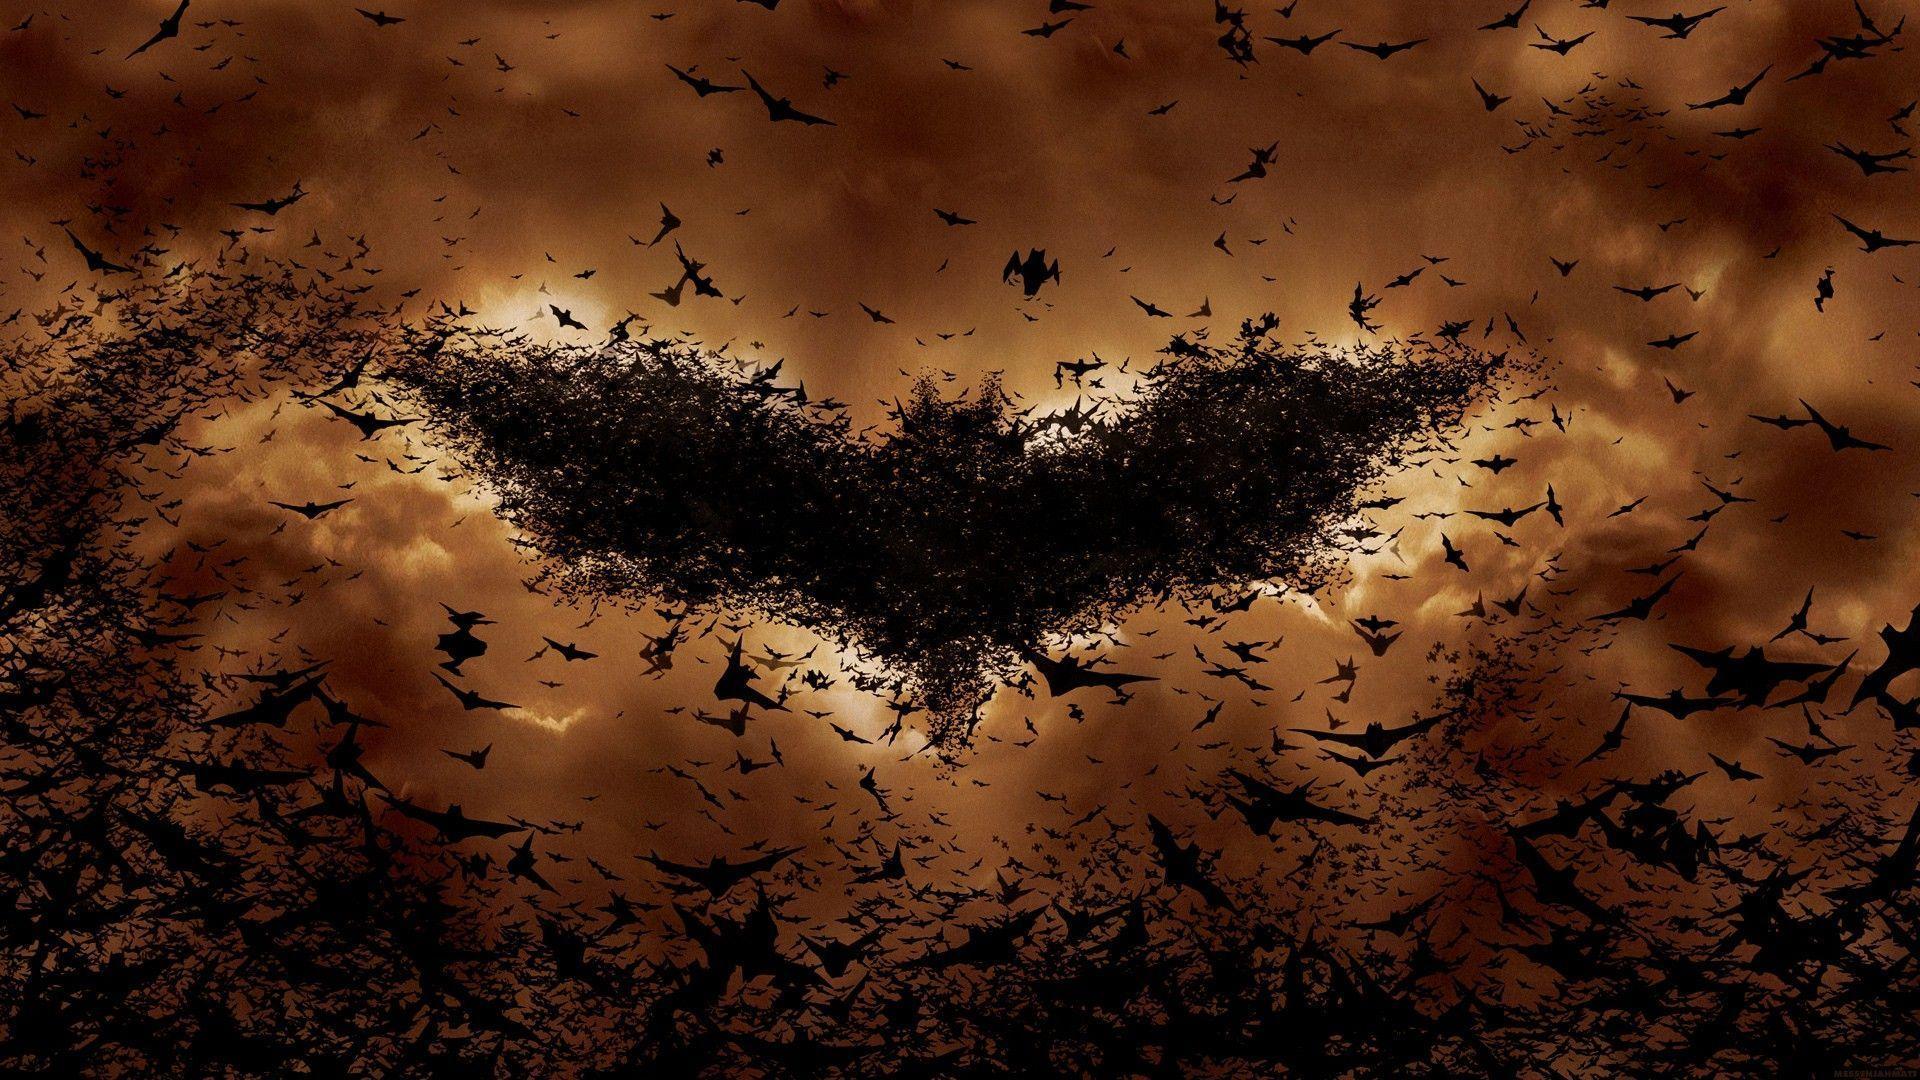 Bats Wallpaper